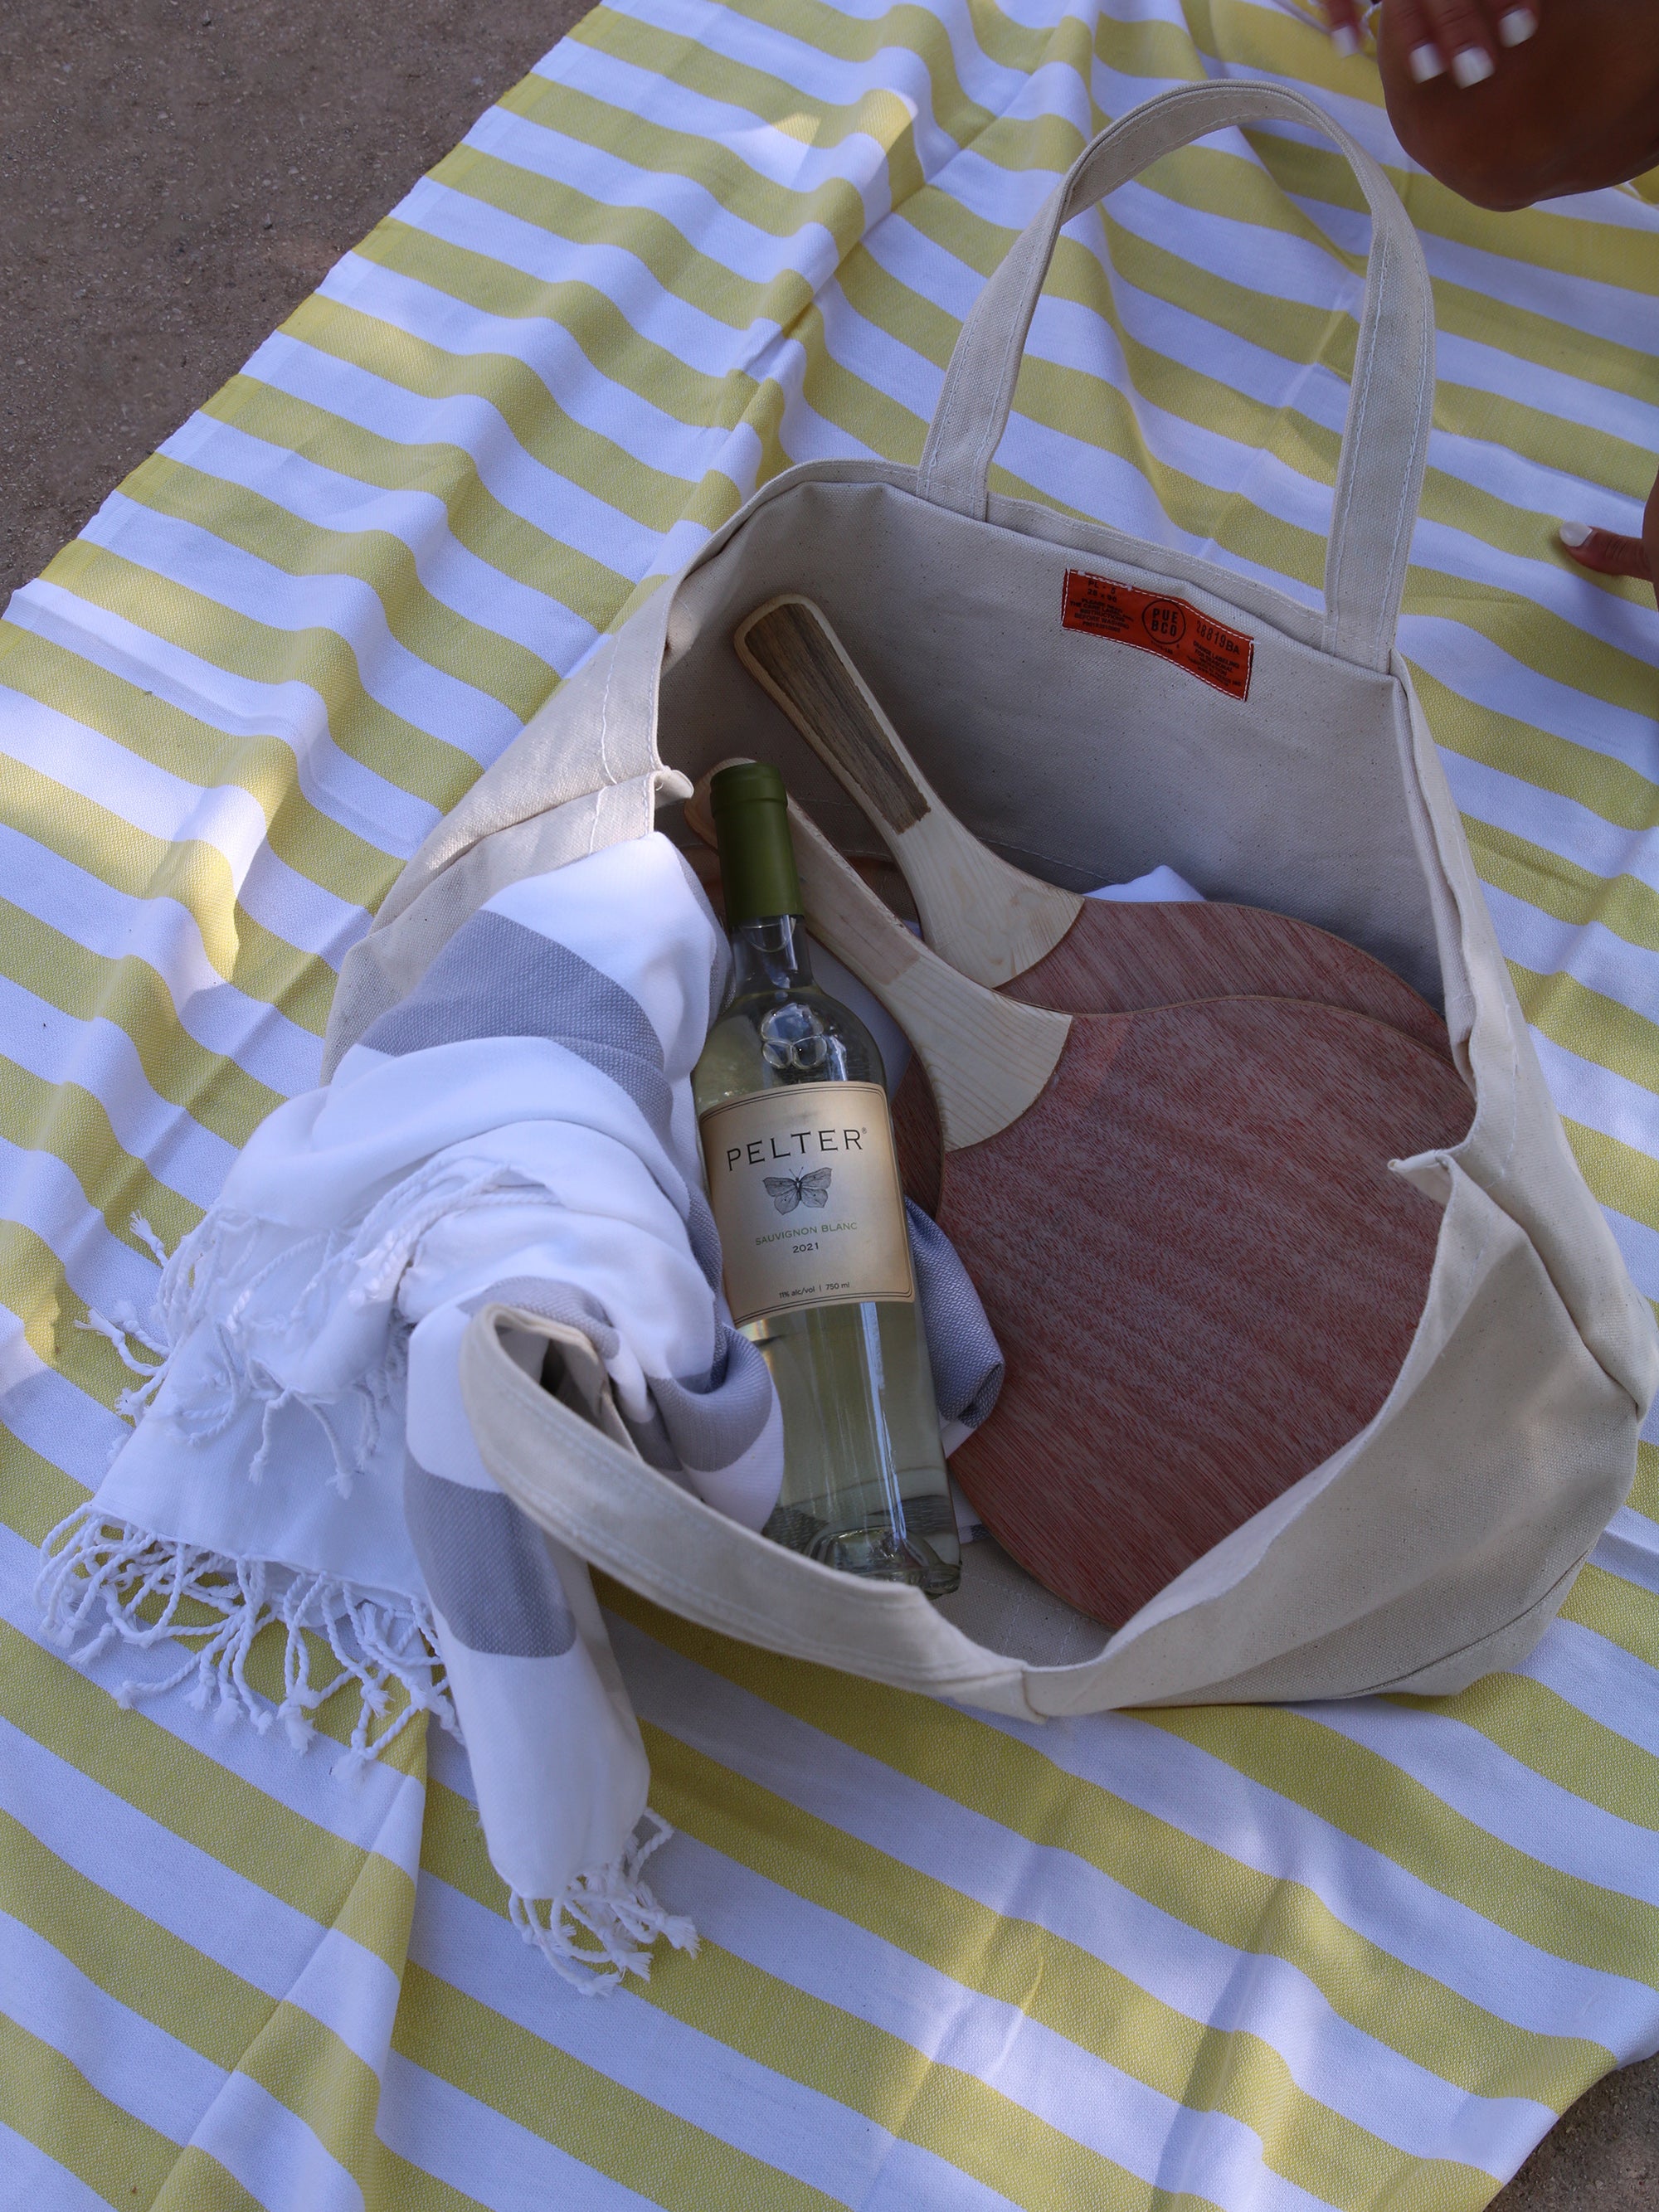 תיק קנבס פתוח שבתוכו מטקות עץ, בקבוק יין לבן ושמיכת חוף לבנה מונח על פשטמל צהוב 